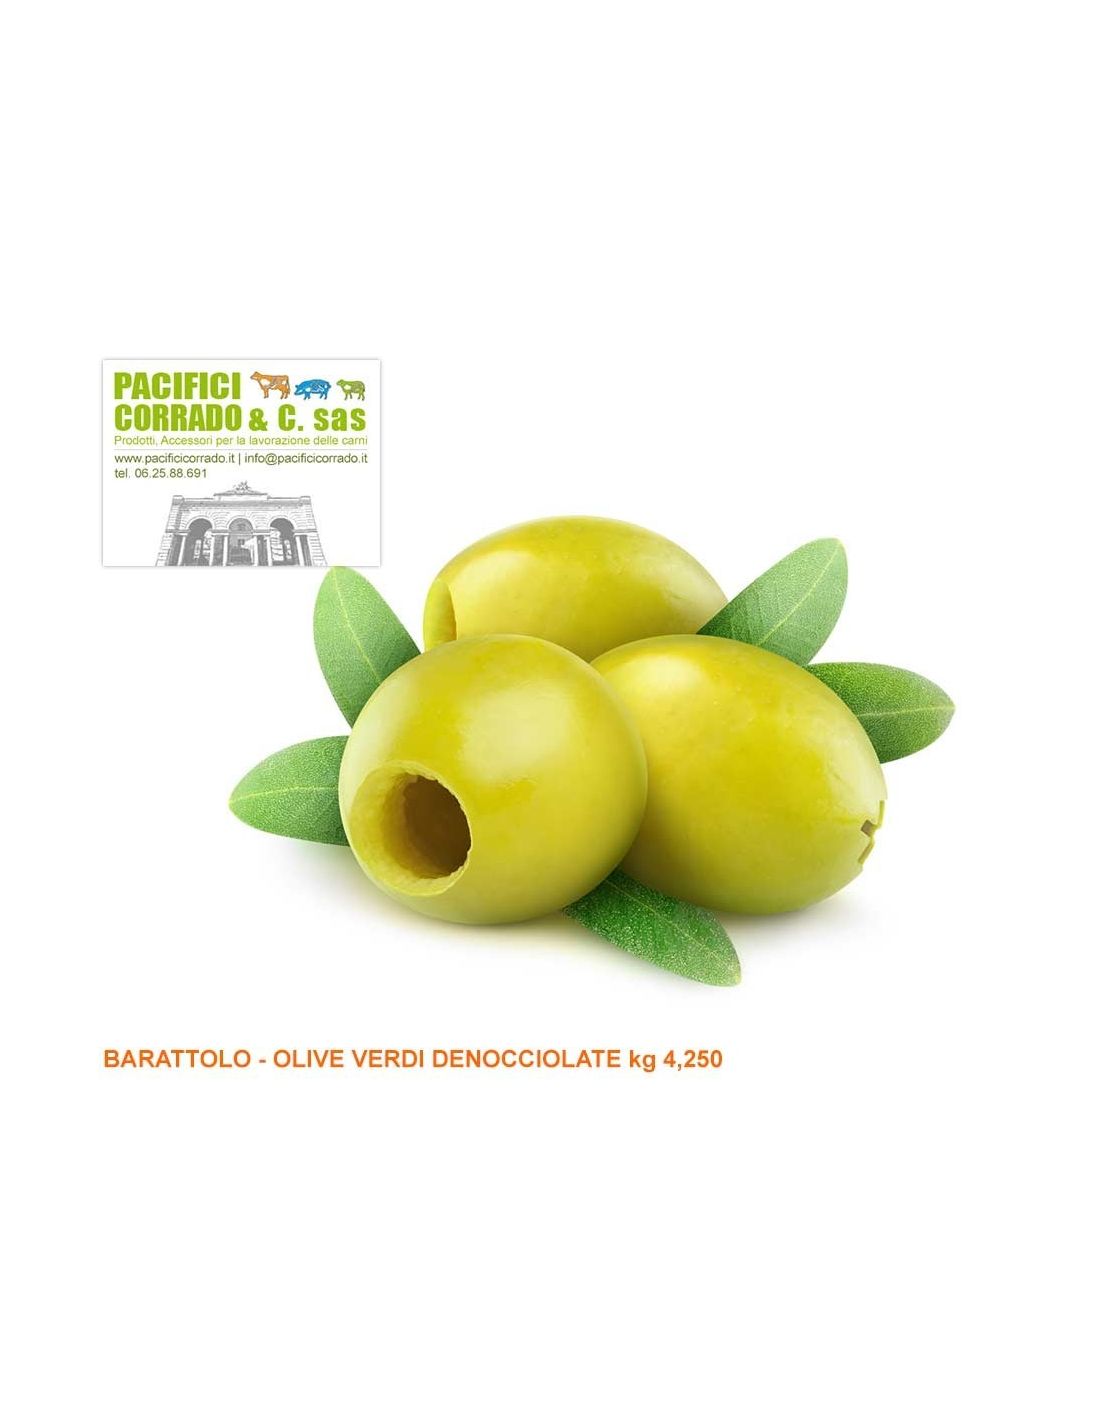 Olive verdi denocciolate kg 4,250